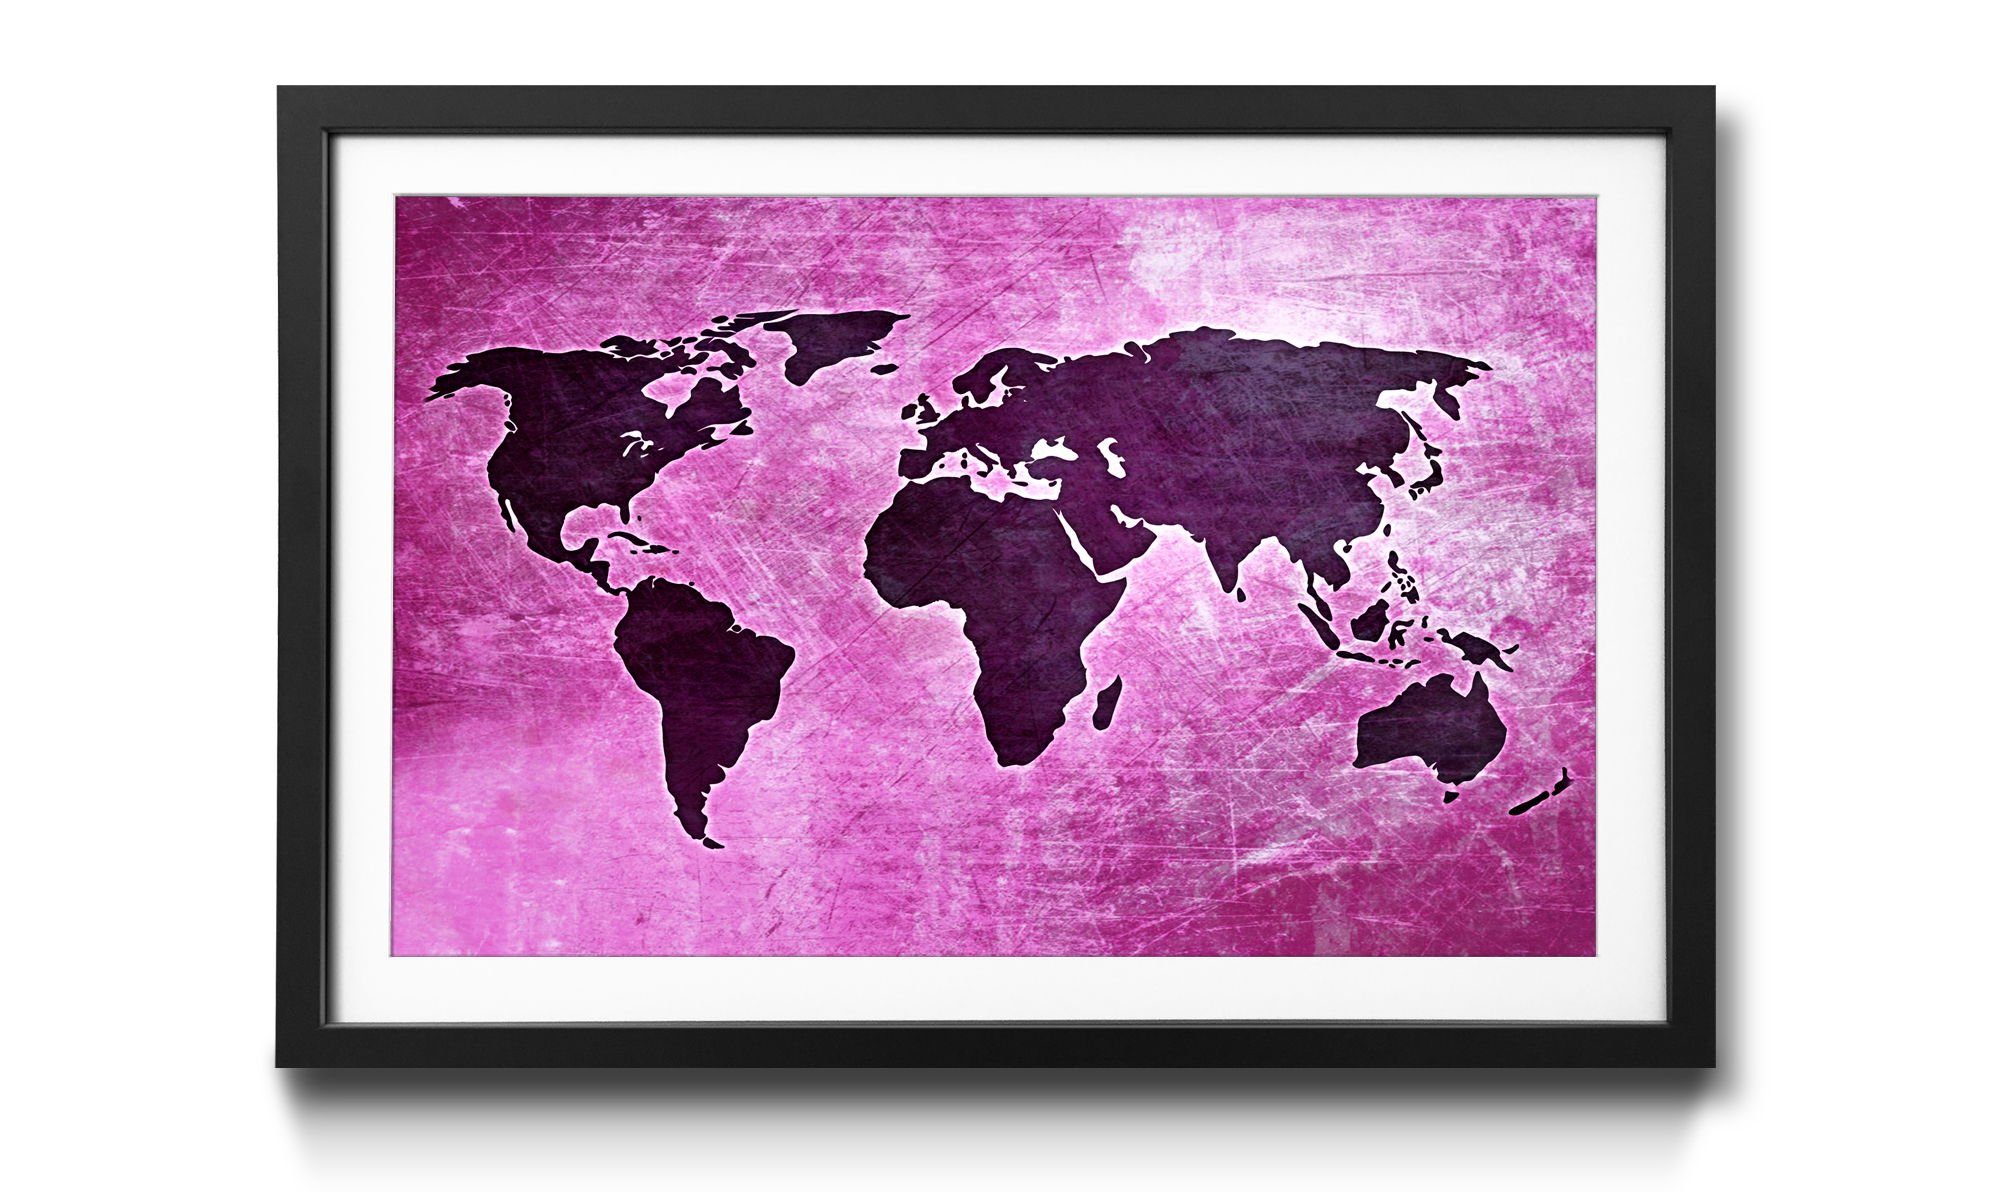 WandbilderXXL Kunstdruck Worldmap No.4, Weltkarte, Wandbild, in 4 Größen erhältlich